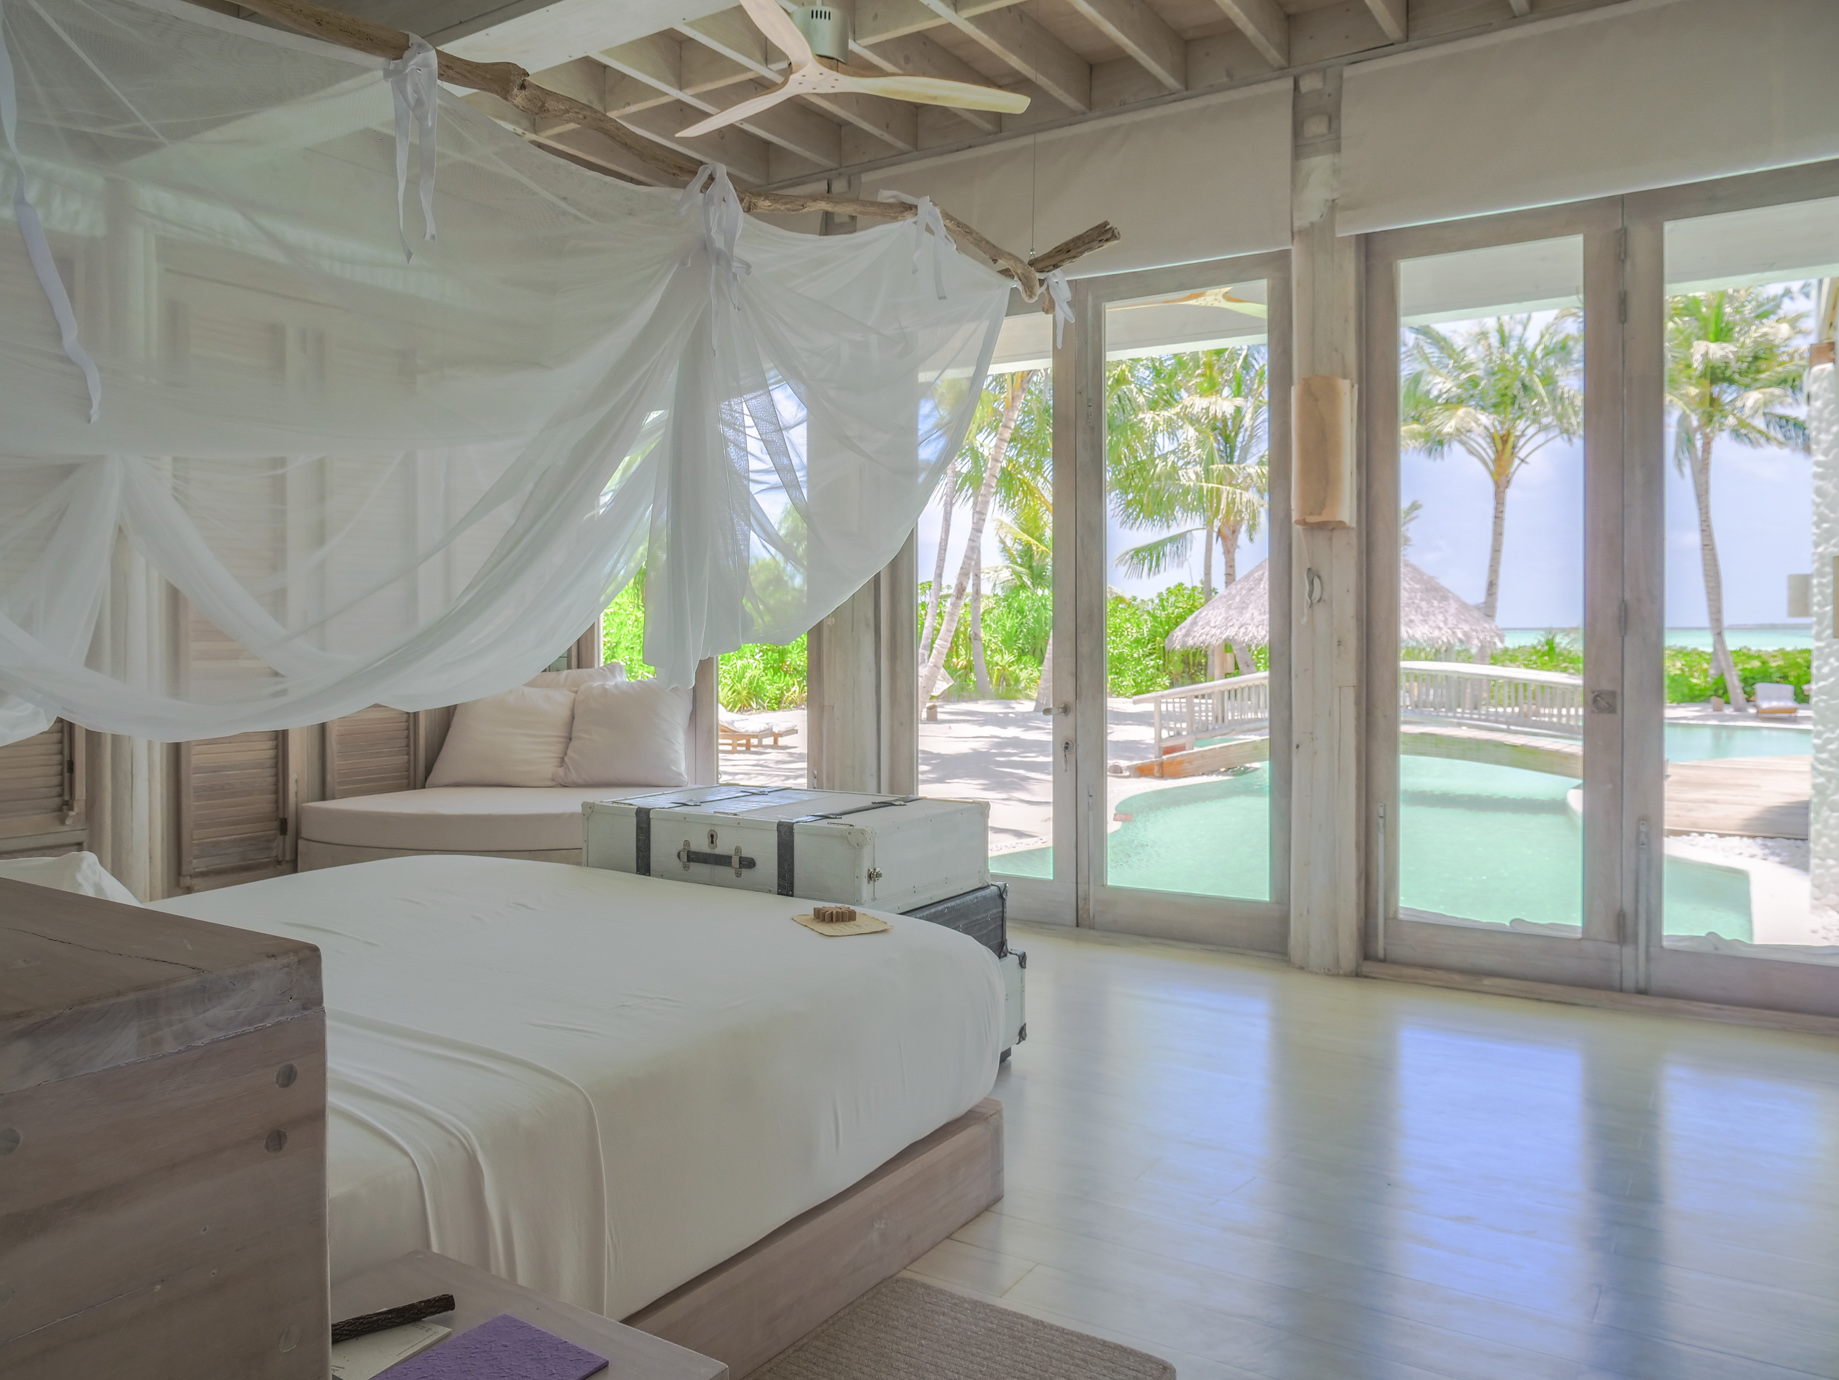 Soneva Jani Resort - Noonu Atoll, Medhufaru, Maldives - 4 Bedroom Island Reserve Villa Bedroom